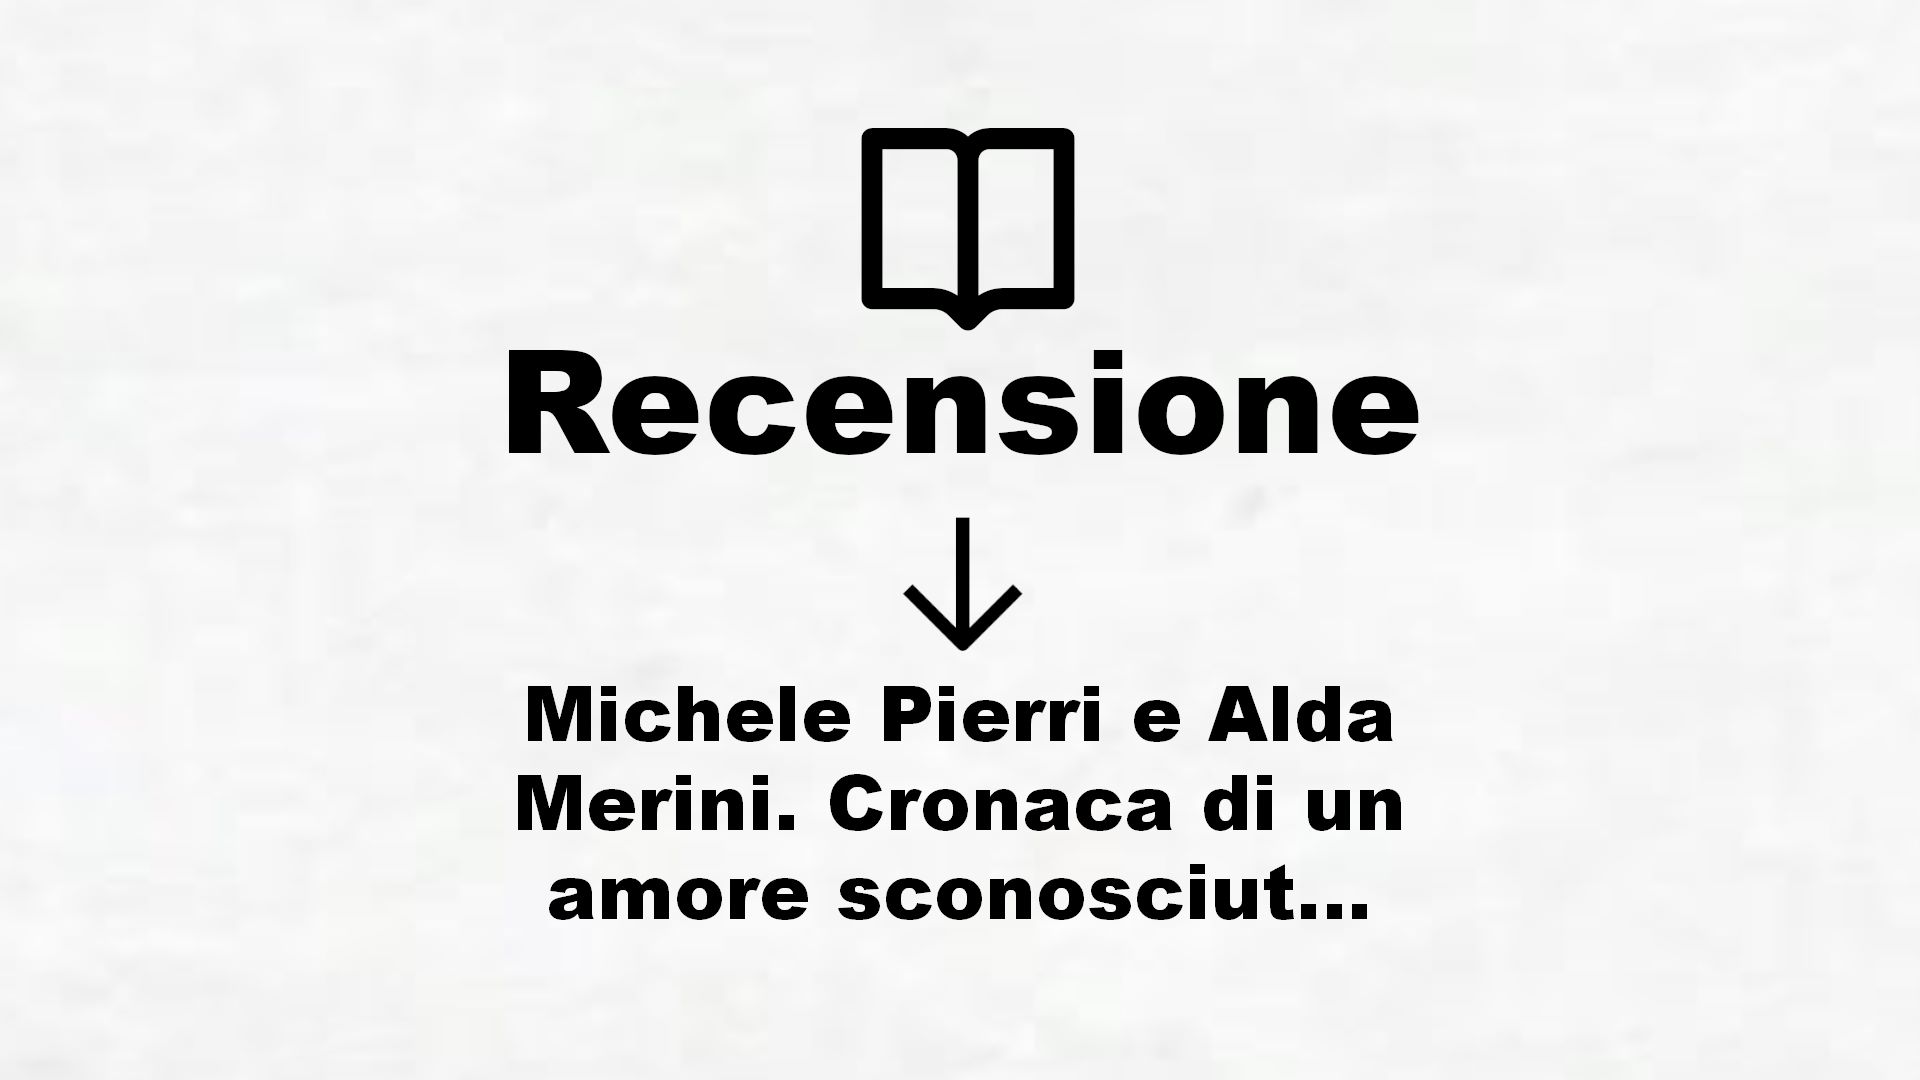 Michele Pierri e Alda Merini. Cronaca di un amore sconosciuto – Recensione Libro